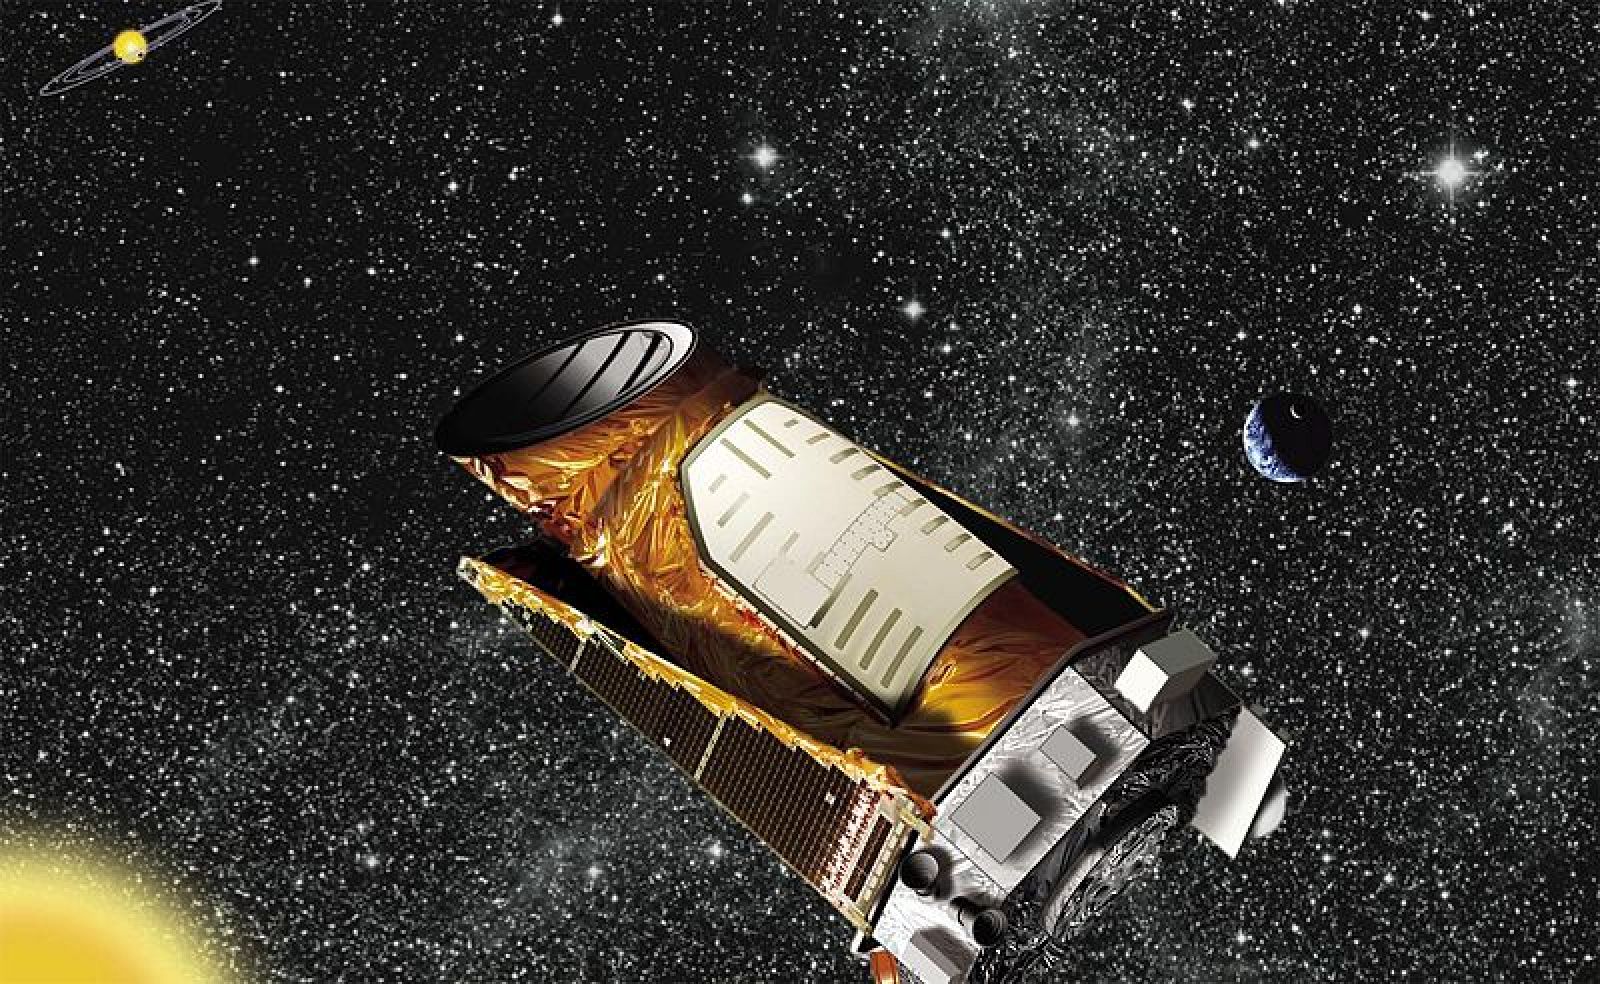 Impresión artística del Kepler en órbita